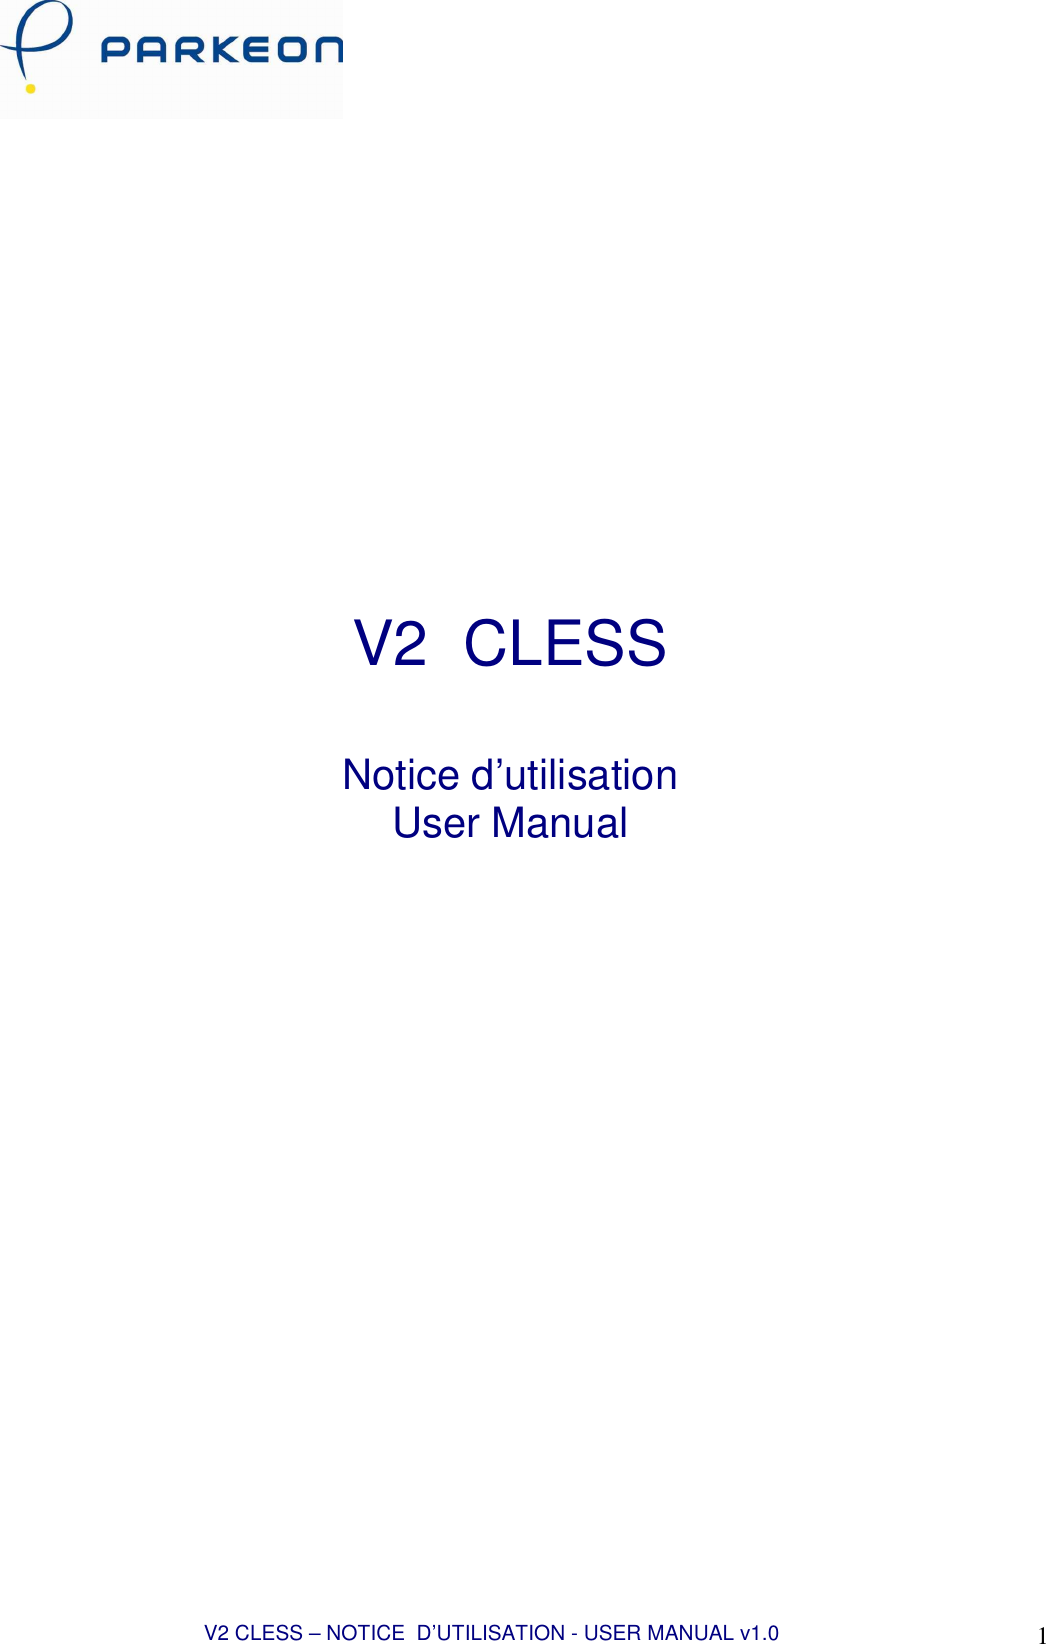  V2 CLESS – NOTICE  D’UTILISATION - USER MANUAL v1.0 1                     V2  CLESS  Notice d’utilisation  User Manual                